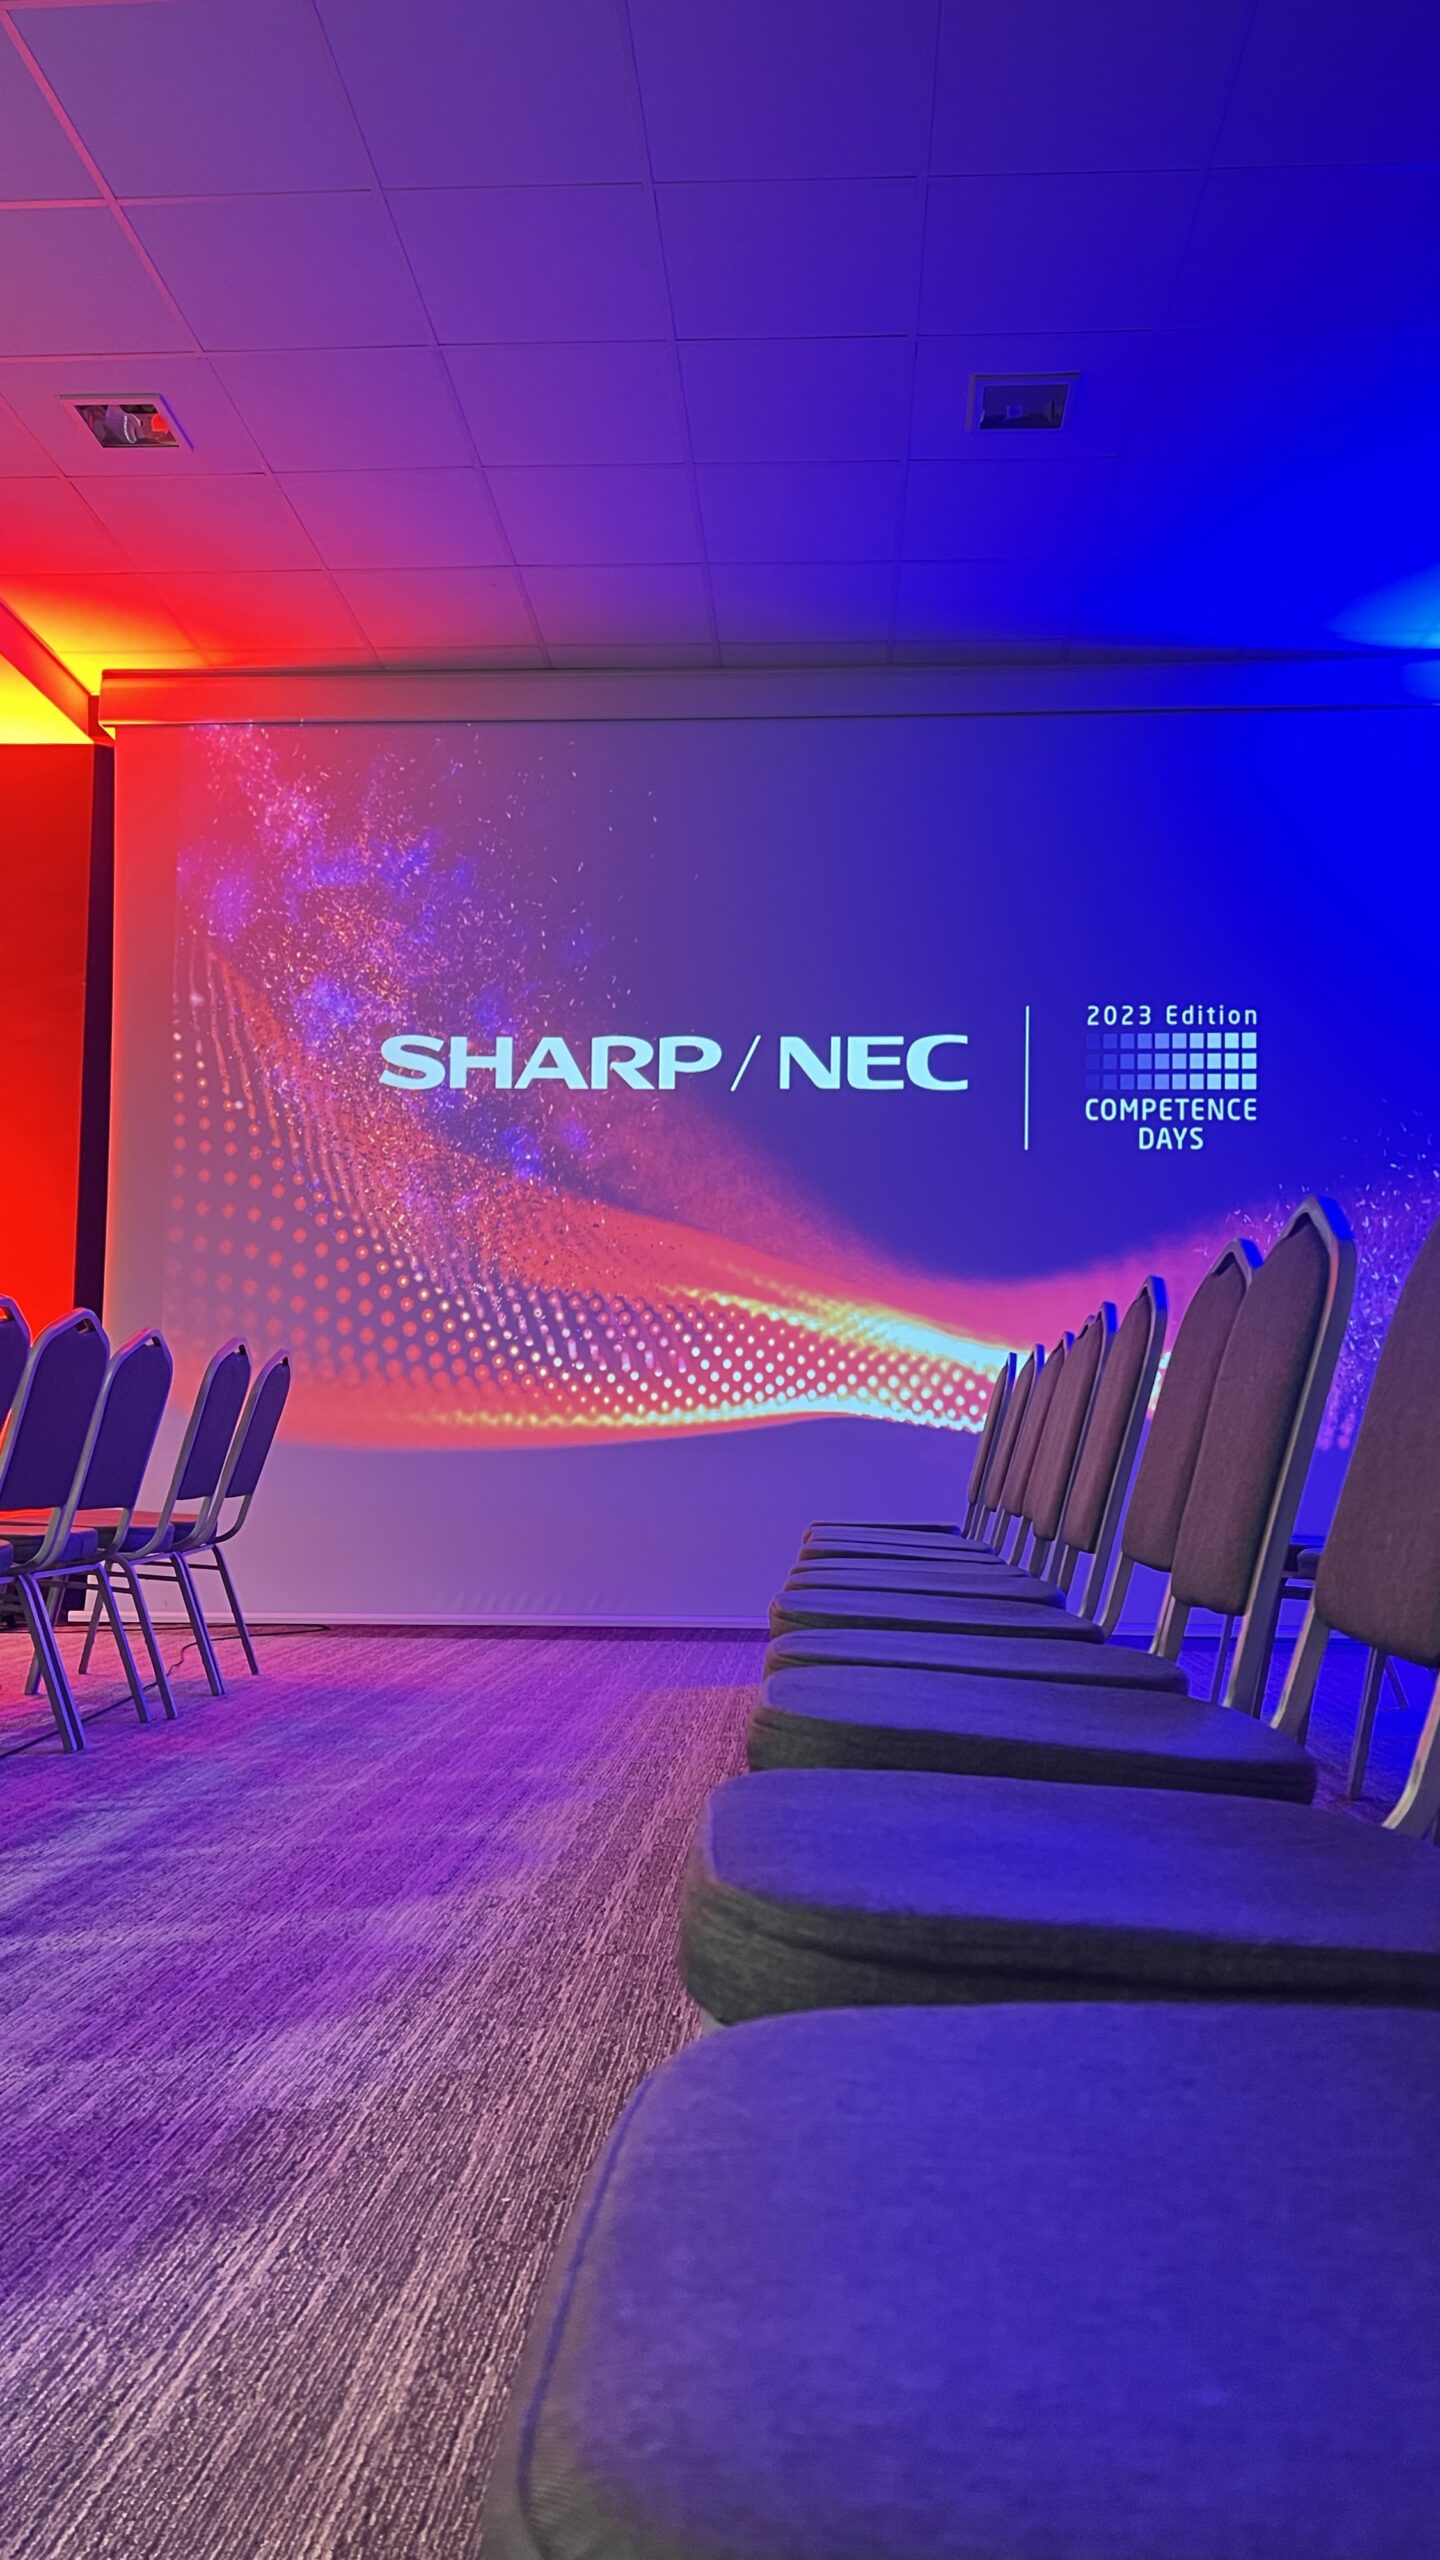 Relacja Statim Integrator z corocznego wydarzenia z Sharp/NEC Competence Days